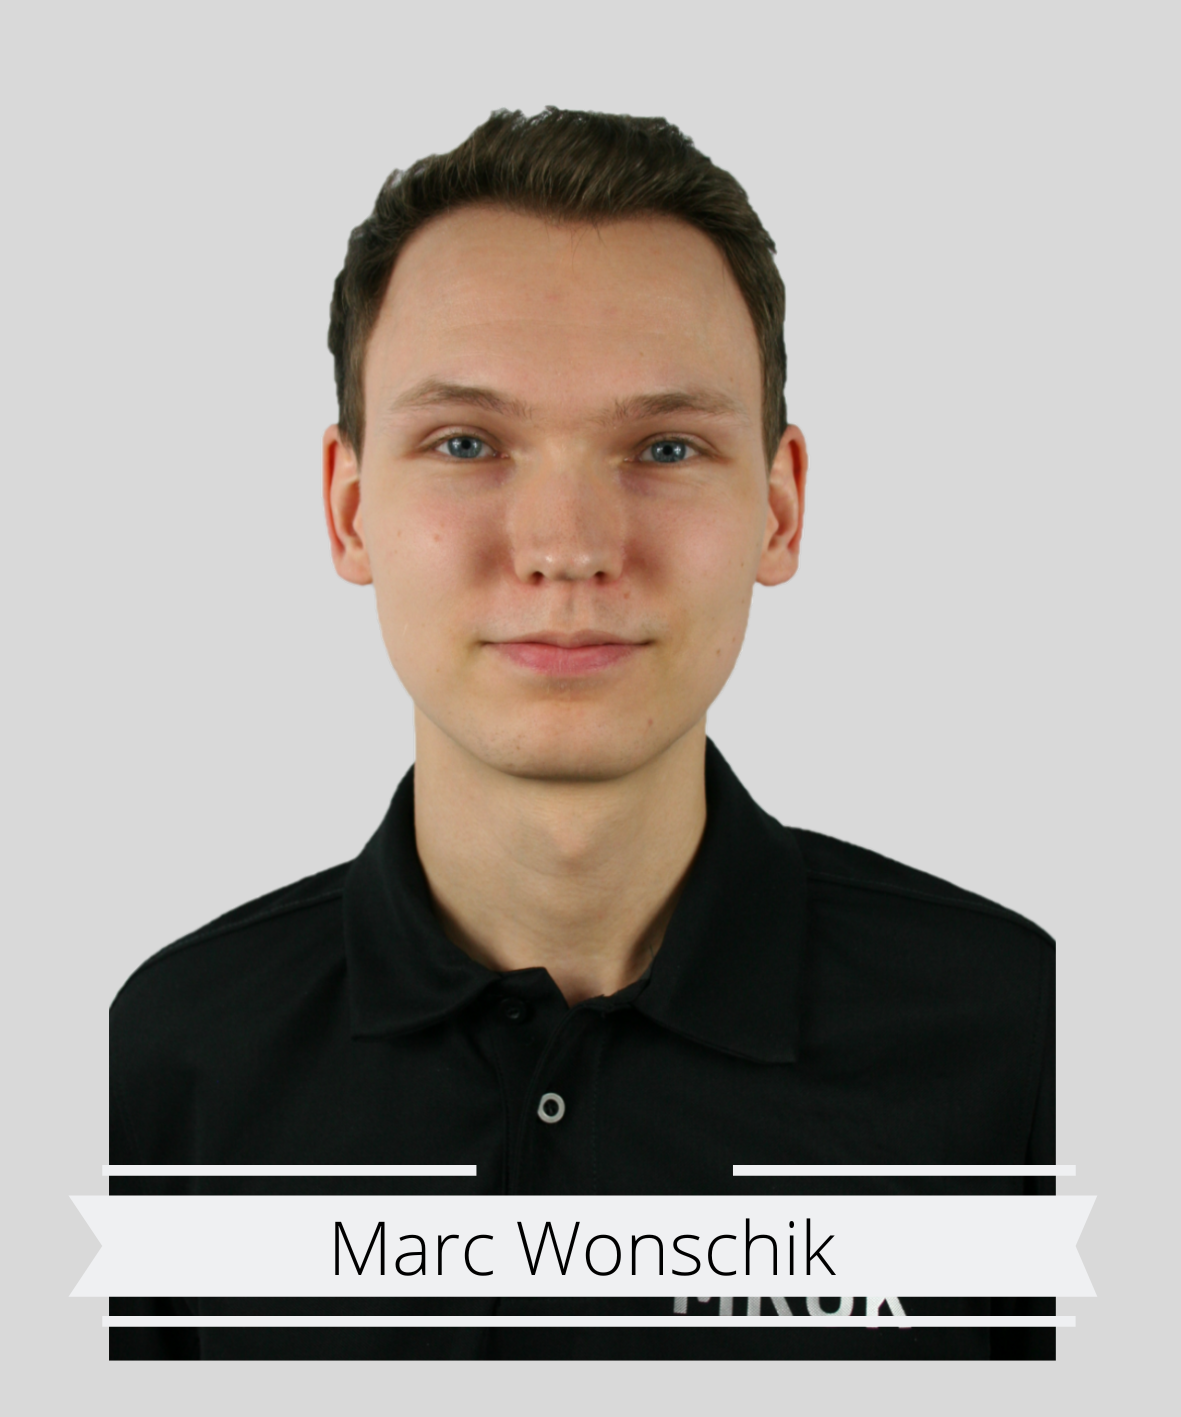 Marc Wonschik